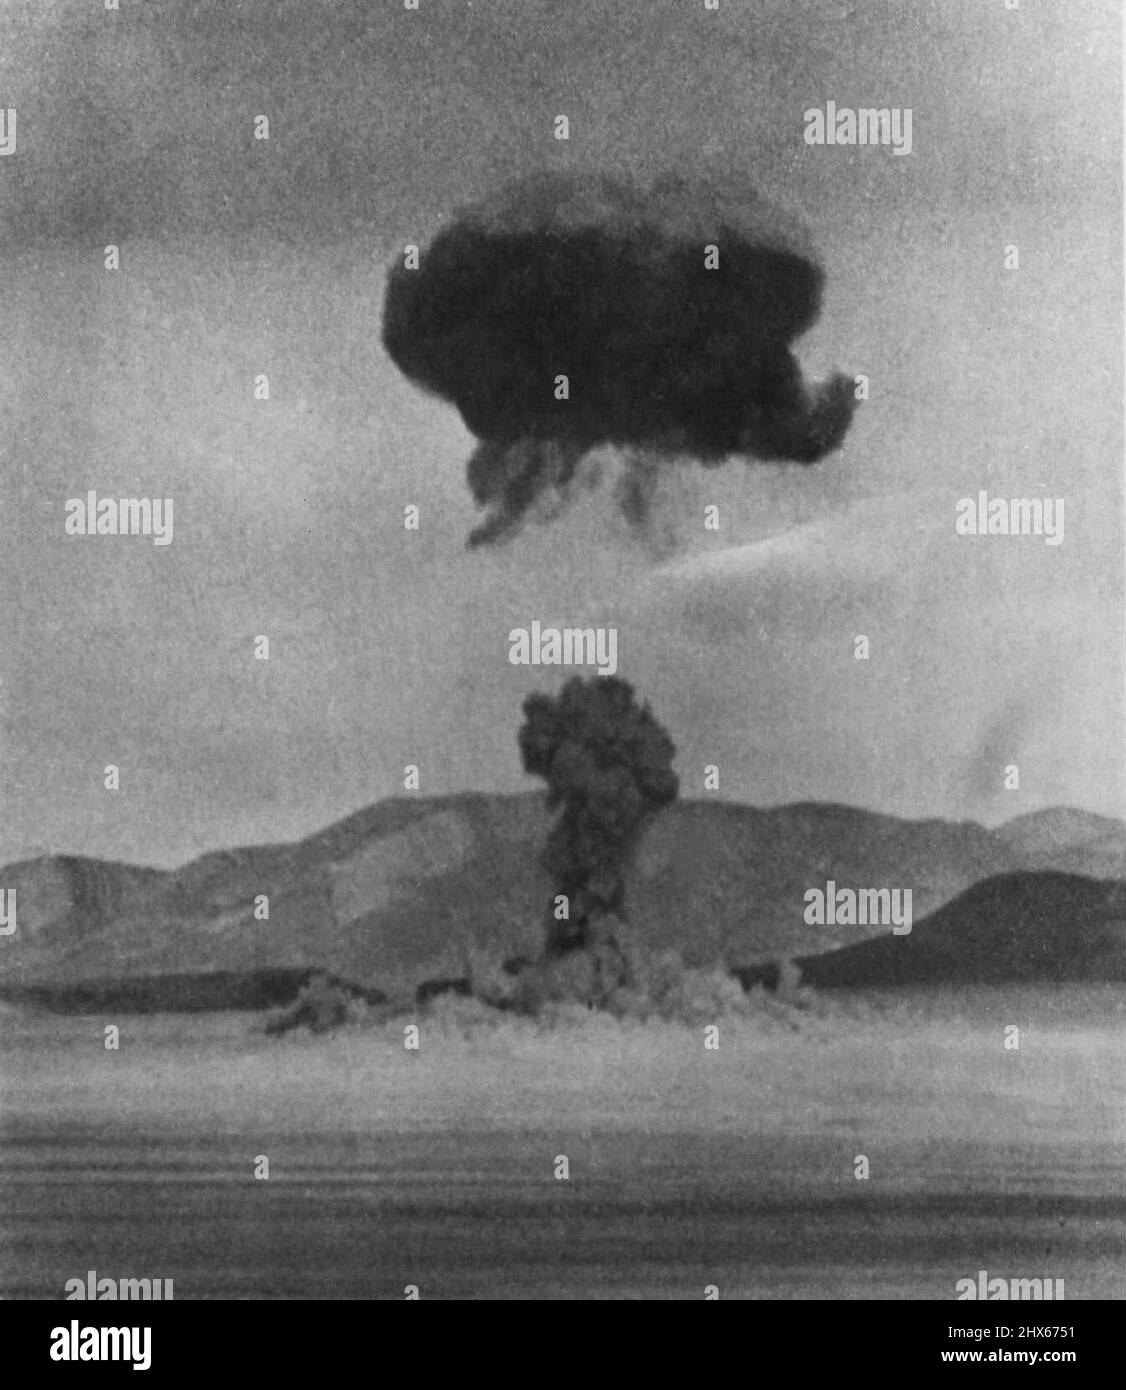 'Operazione Teapot' -- il primo colpo di 'operazione Teapot', la primavera 1955 Serie di test nucleari al Nevada Test Site, sembrava questo poco dopo la detonazione a mezzogiorno di oggi. La nube nucleare si sta formando dalla palla di fuoco mentre il gambo viene risucchiato verso la nube. Febbraio 18, 1955. (Foto di AP Wirephoto). Foto Stock